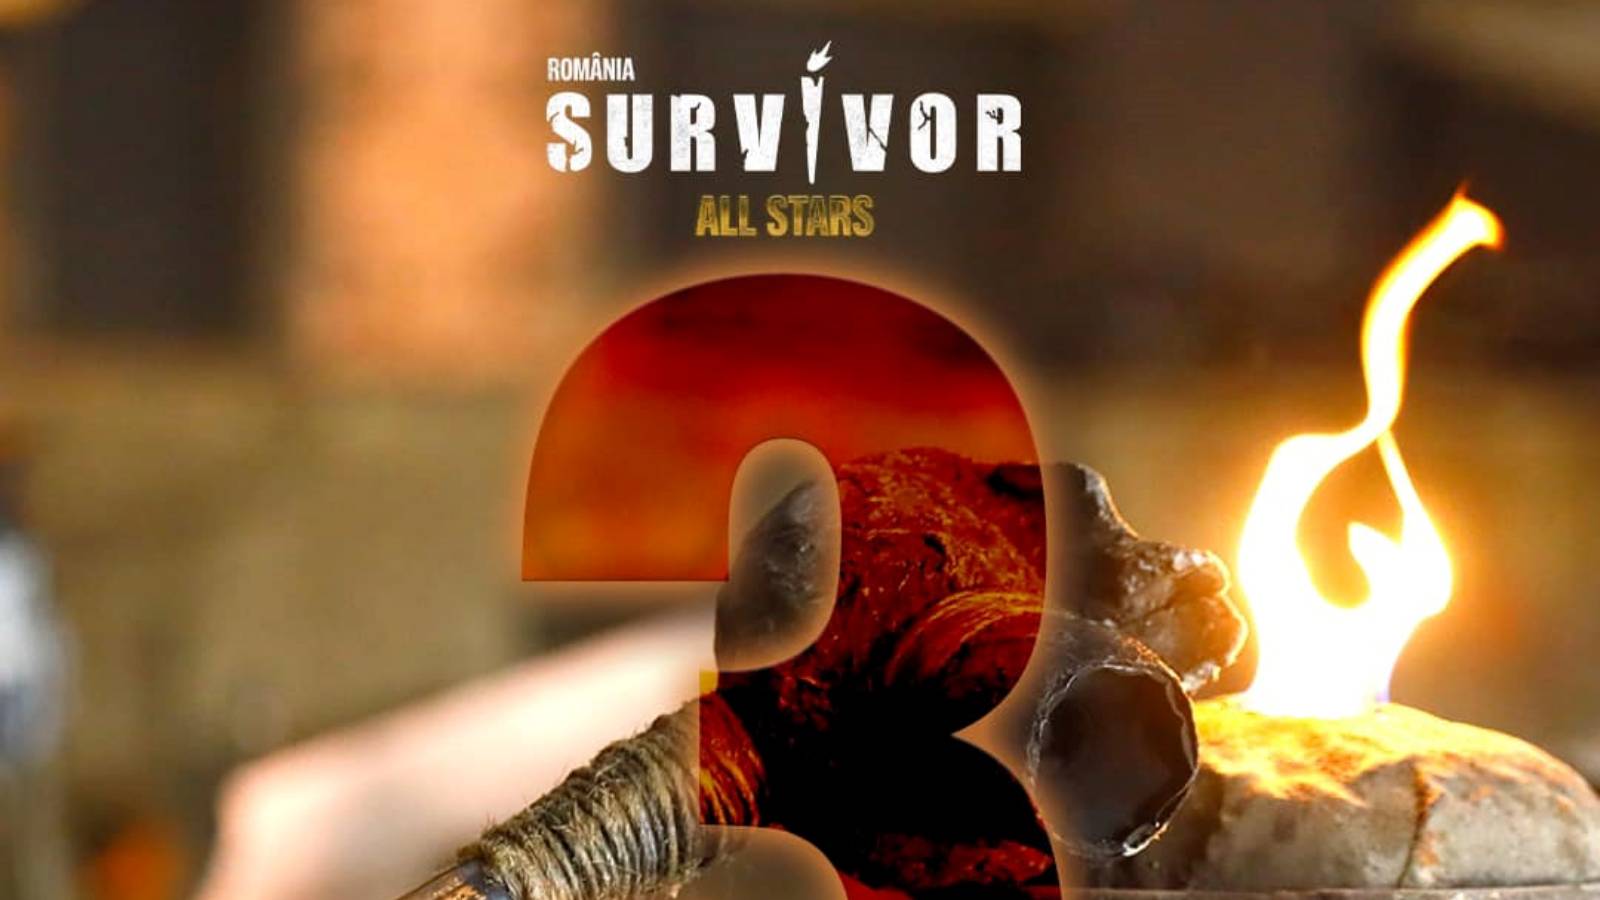 PRO TV Survivor Romania valmis debyyttiin All Stars -kausi -ilmoitus Viimeisen tunnin ensimmäiset pelit